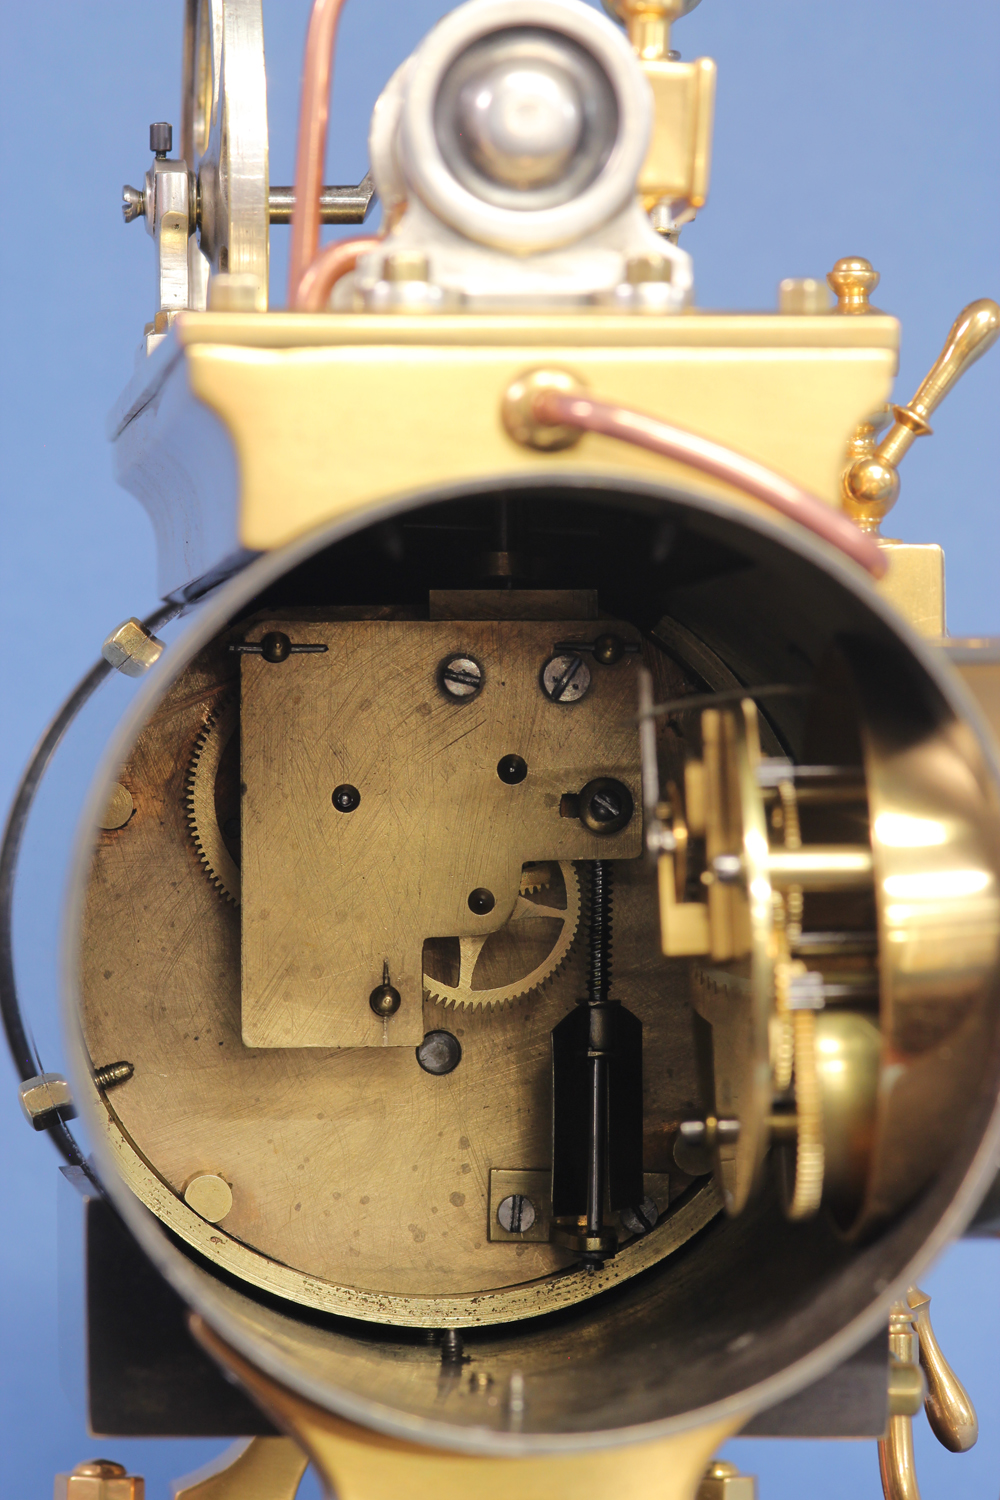 Horizontal Industrial Boiler Clock.